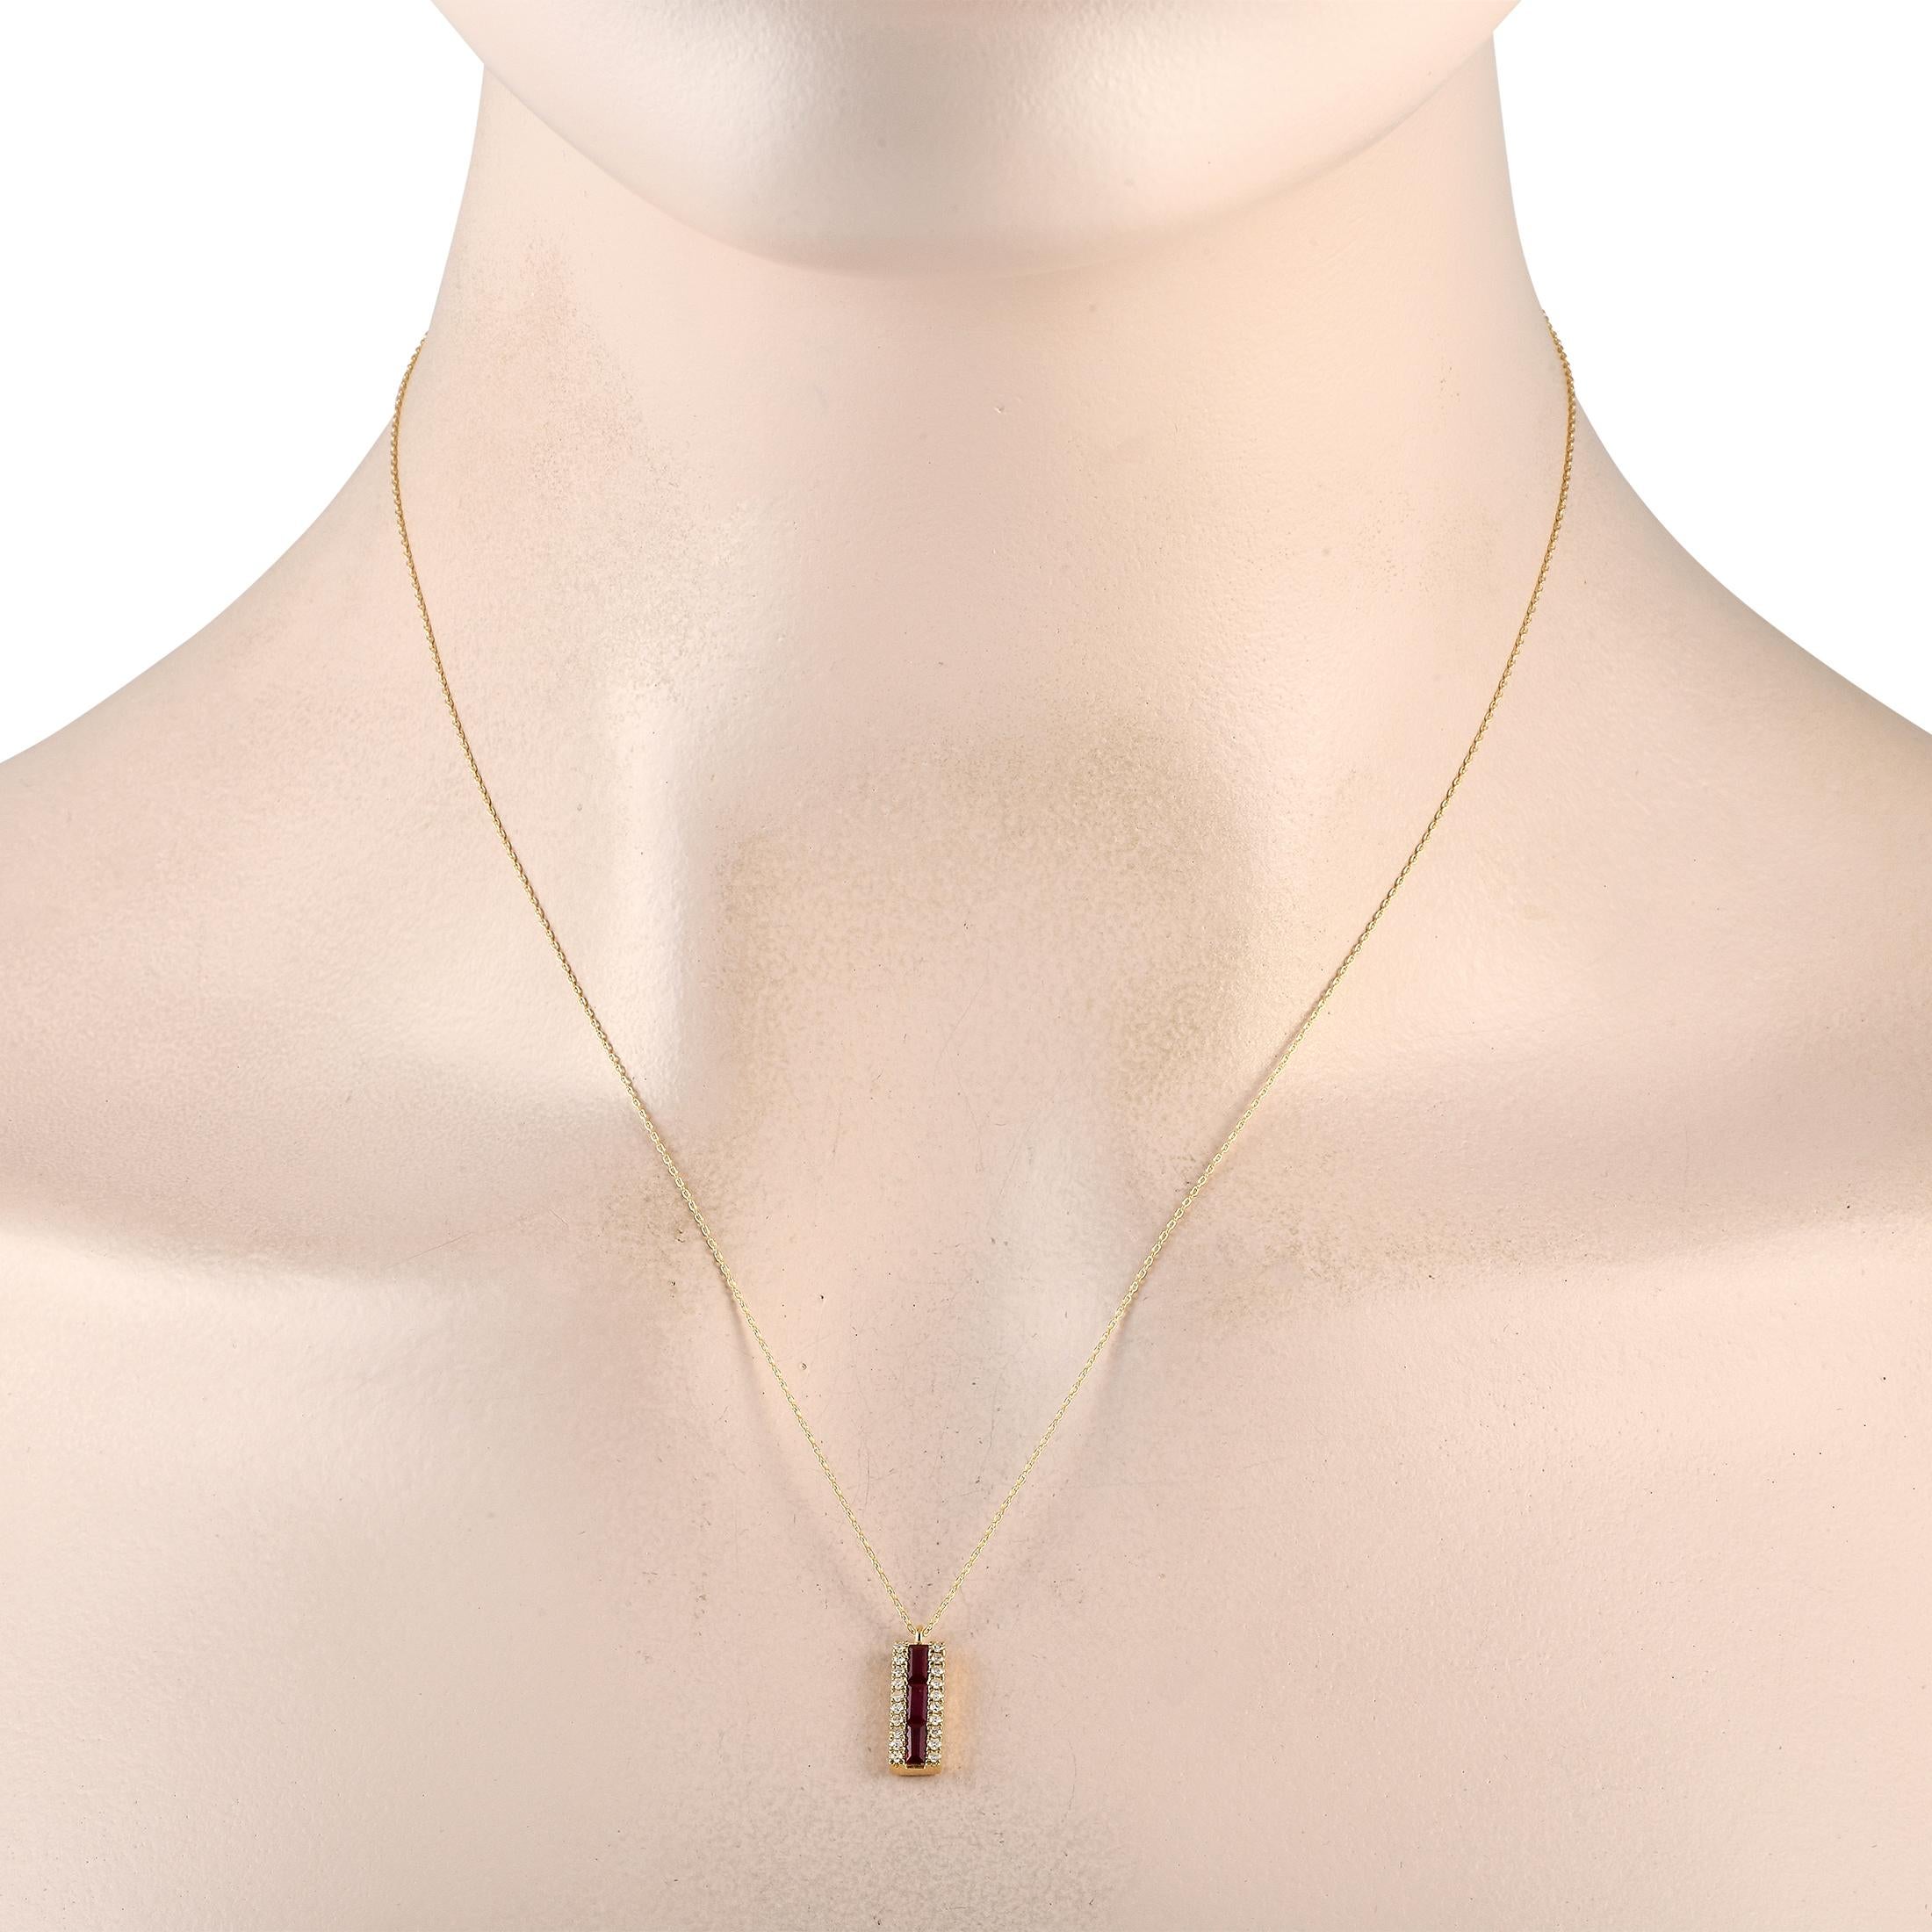 Eine Reihe von Rubin-Edelsteinen wird bei dieser exquisiten Halskette von Diamanten im Rundschliff mit insgesamt 0,10 Karat akzentuiert. Der aus 14K Gelbgold gefertigte Anhänger ist 0,65 lang und 0,20 breit und hängt an einer 18er Kette. Das